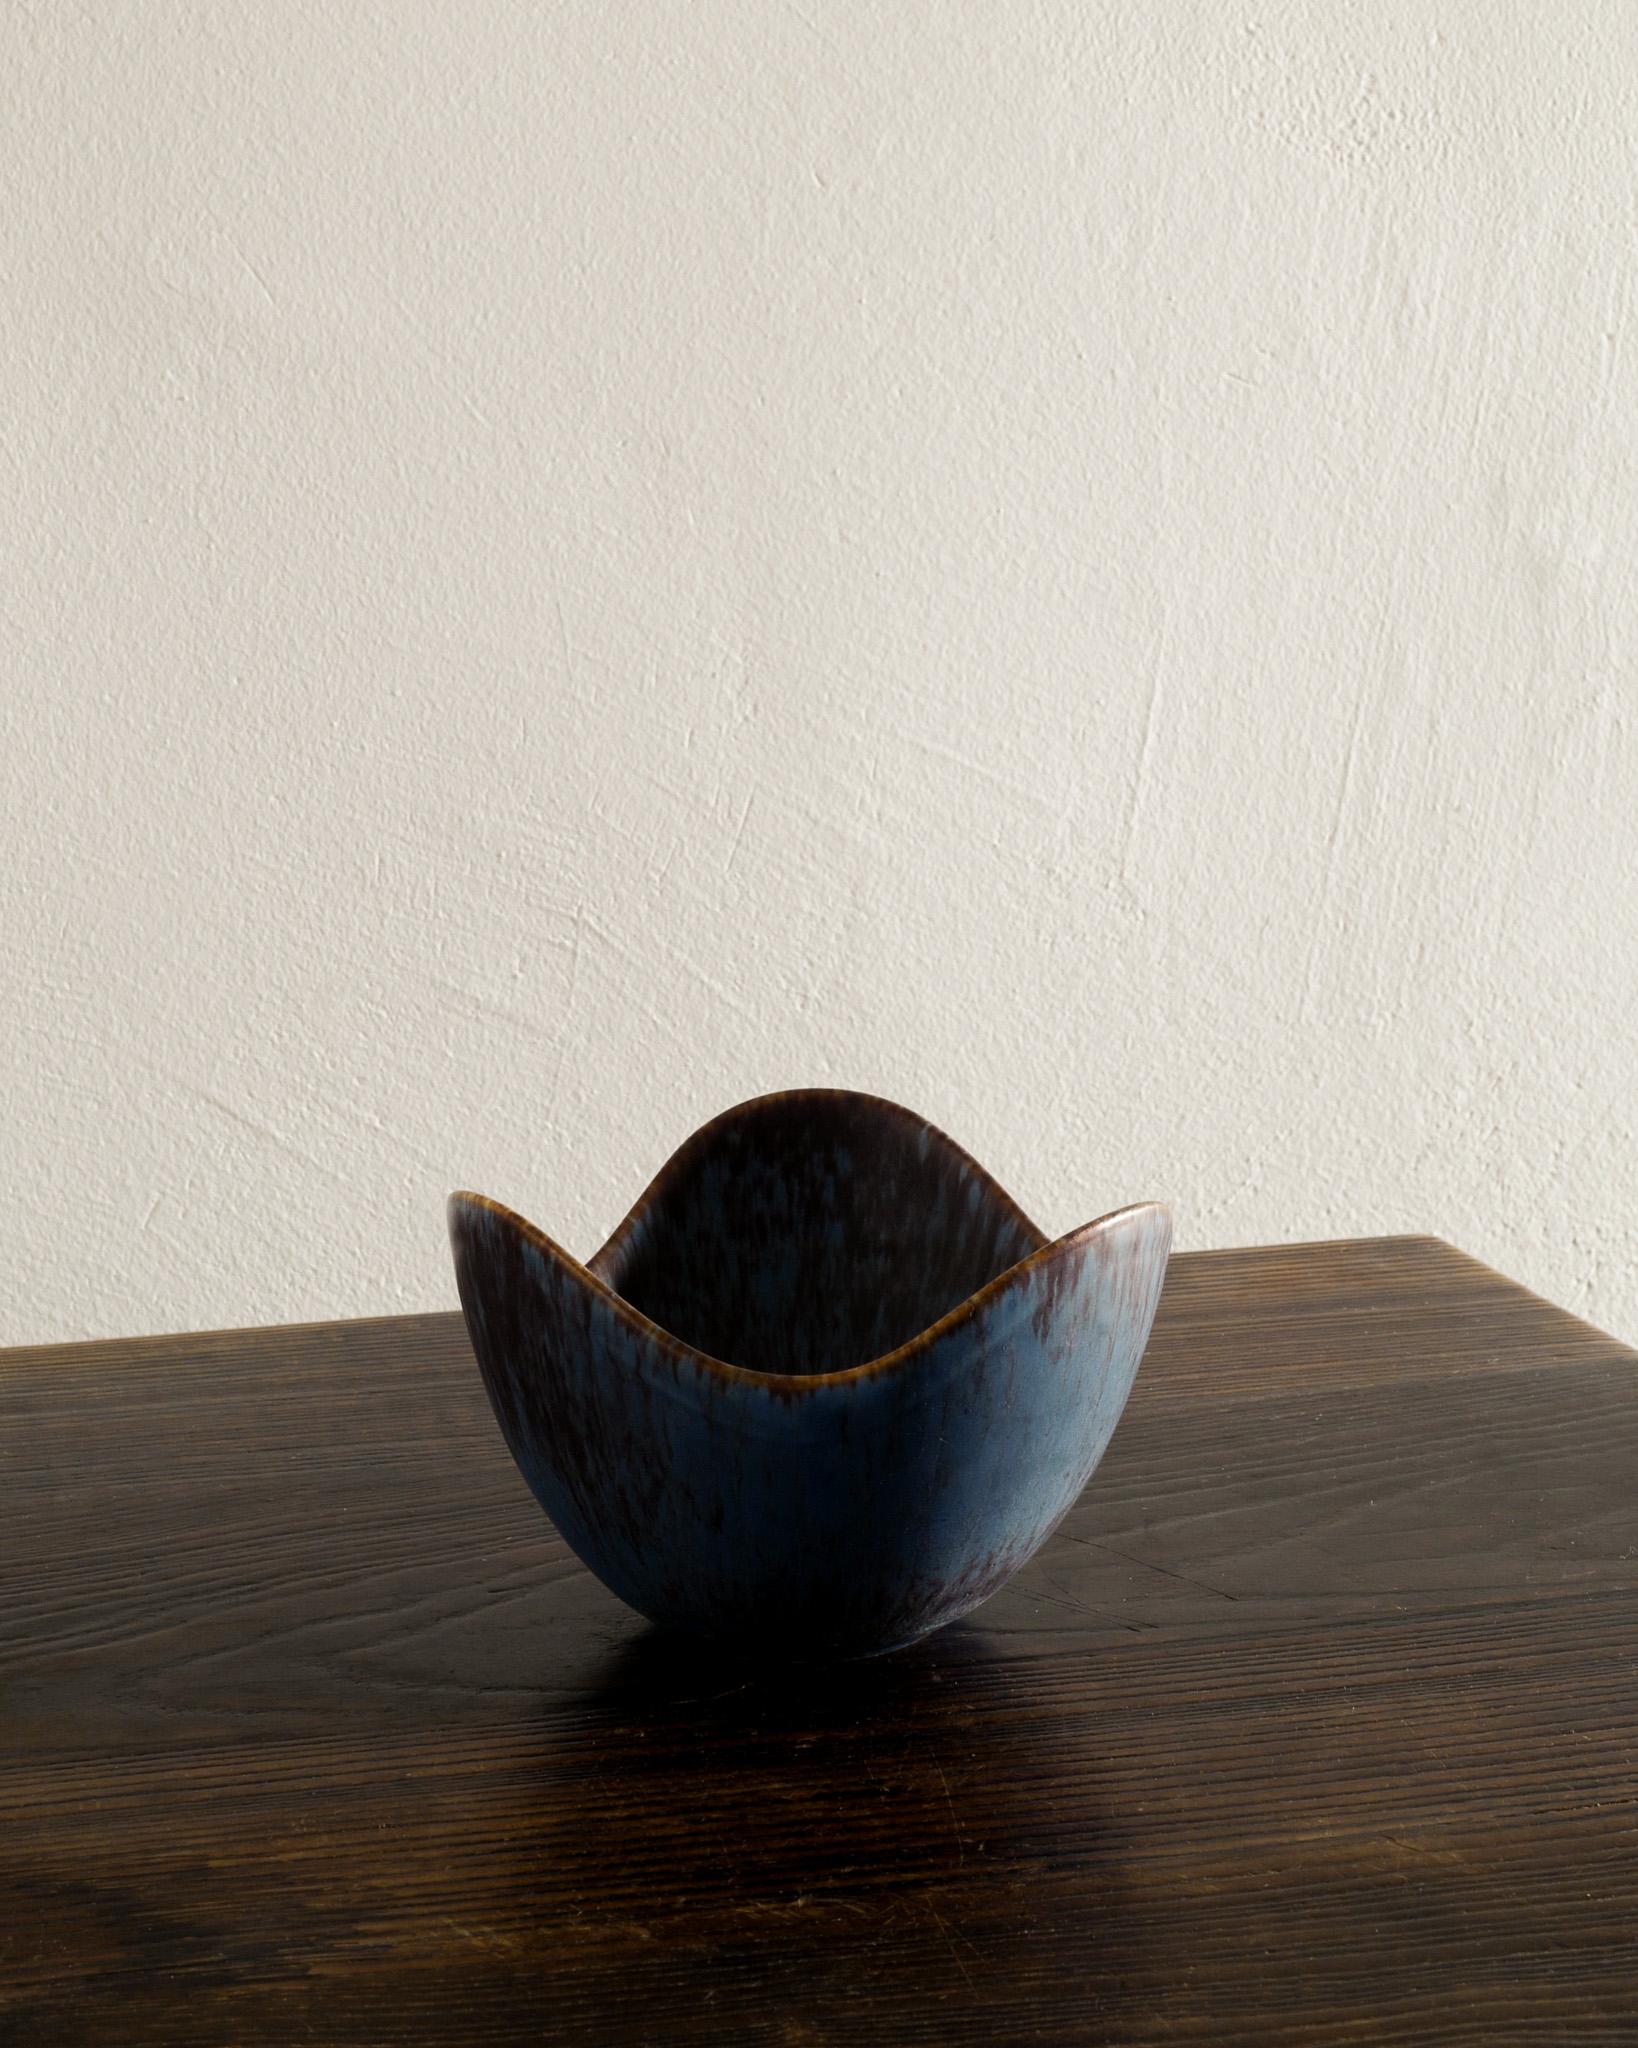 Seltene Keramik / Steinzeug Schale in blau-brauner Glasur von Gunnar Nylund produziert von Rörstrand Schweden 1950er Jahren. In gutem Zustand. Unterzeichnet 